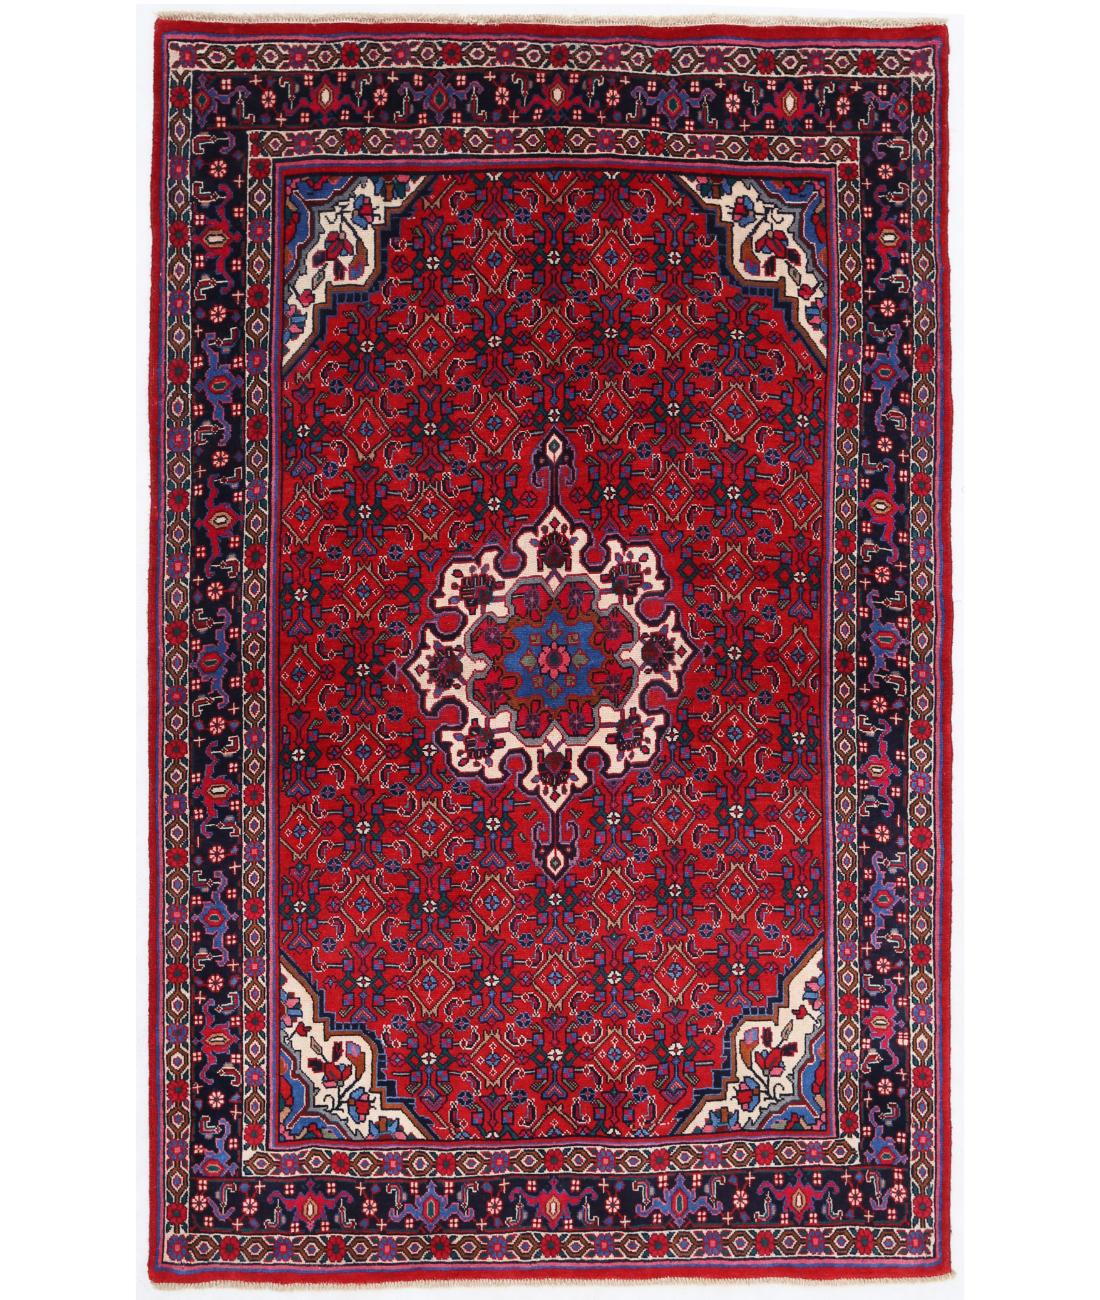 Hand Knotted Persian Bijar Wool Rug - 3'11'' x 6'3'' 3' 11" X 6' 3" ( 119 X 191 ) / Red / Black